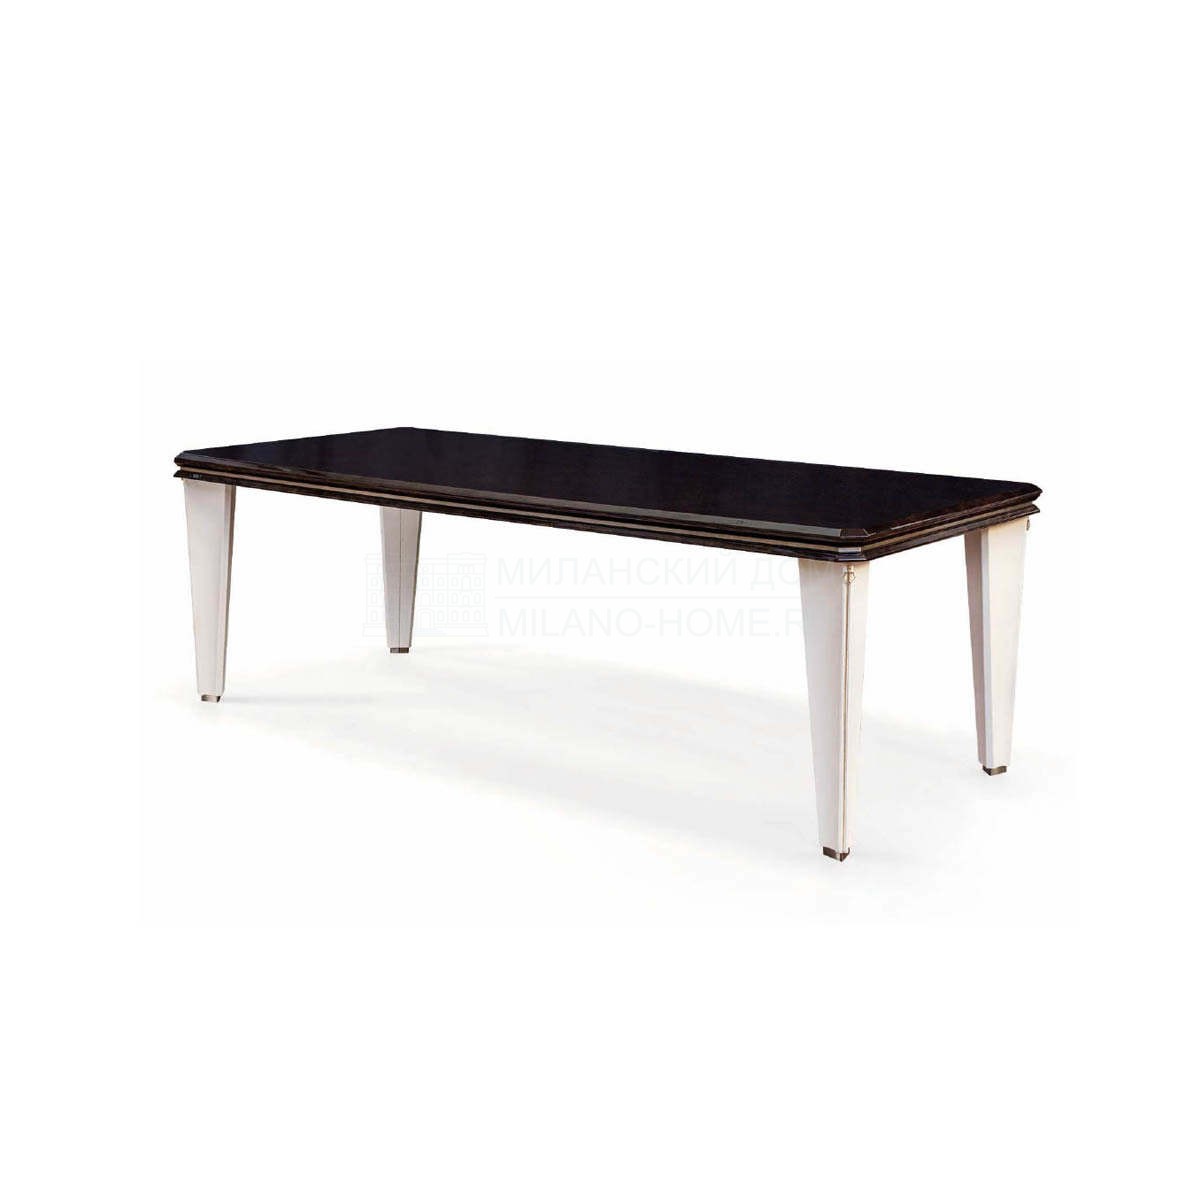 Обеденный стол Noir rectangular table из Италии фабрики TURRI